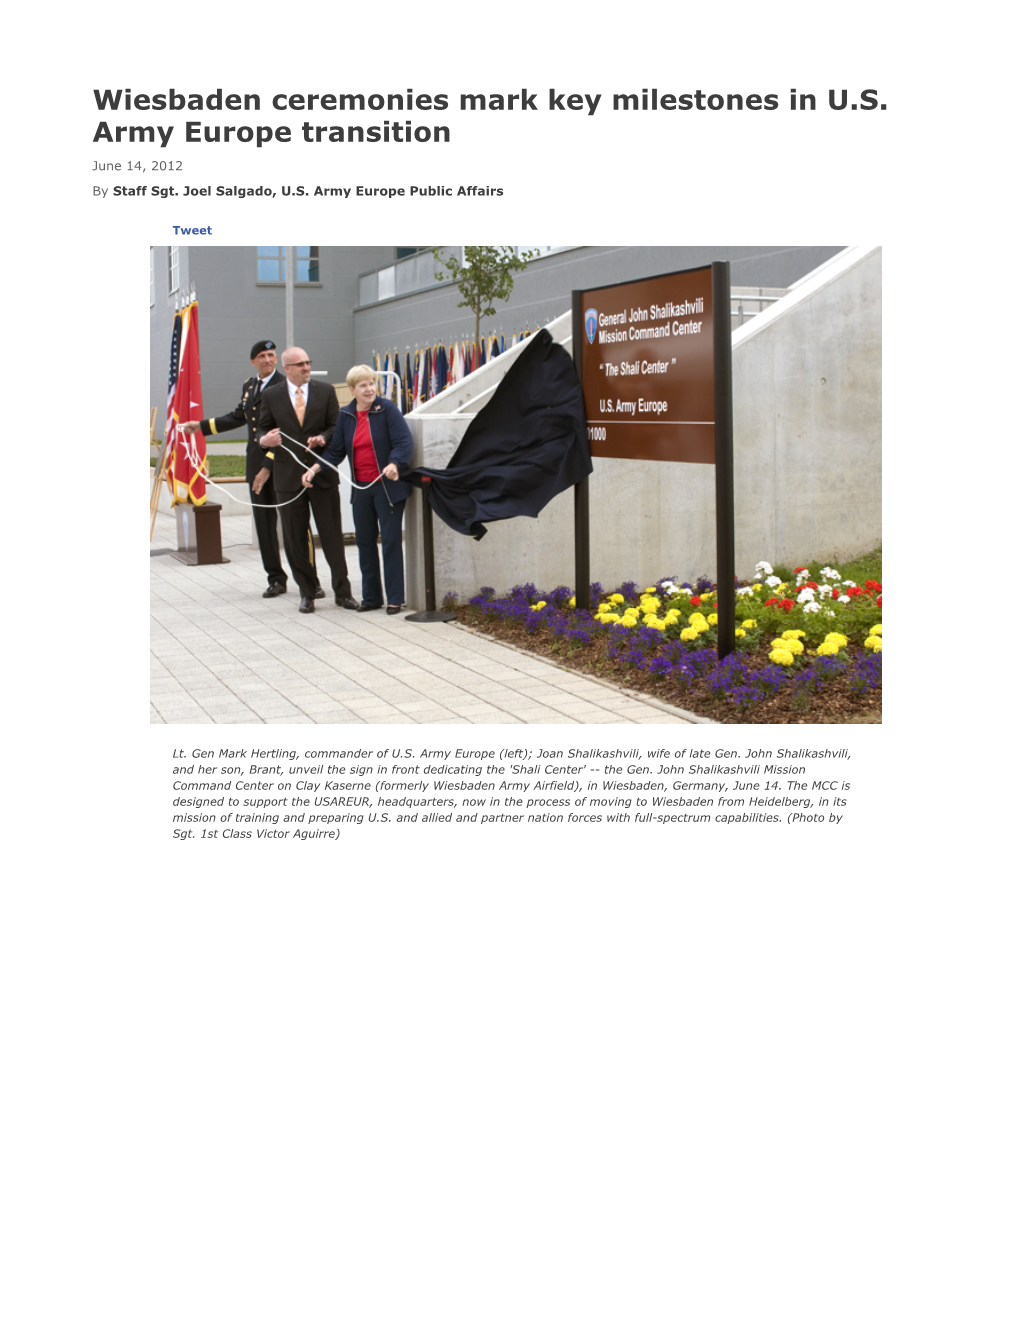 Wiesbaden Ceremonies Mark Key Milestones in U.S. Army Europe Transition